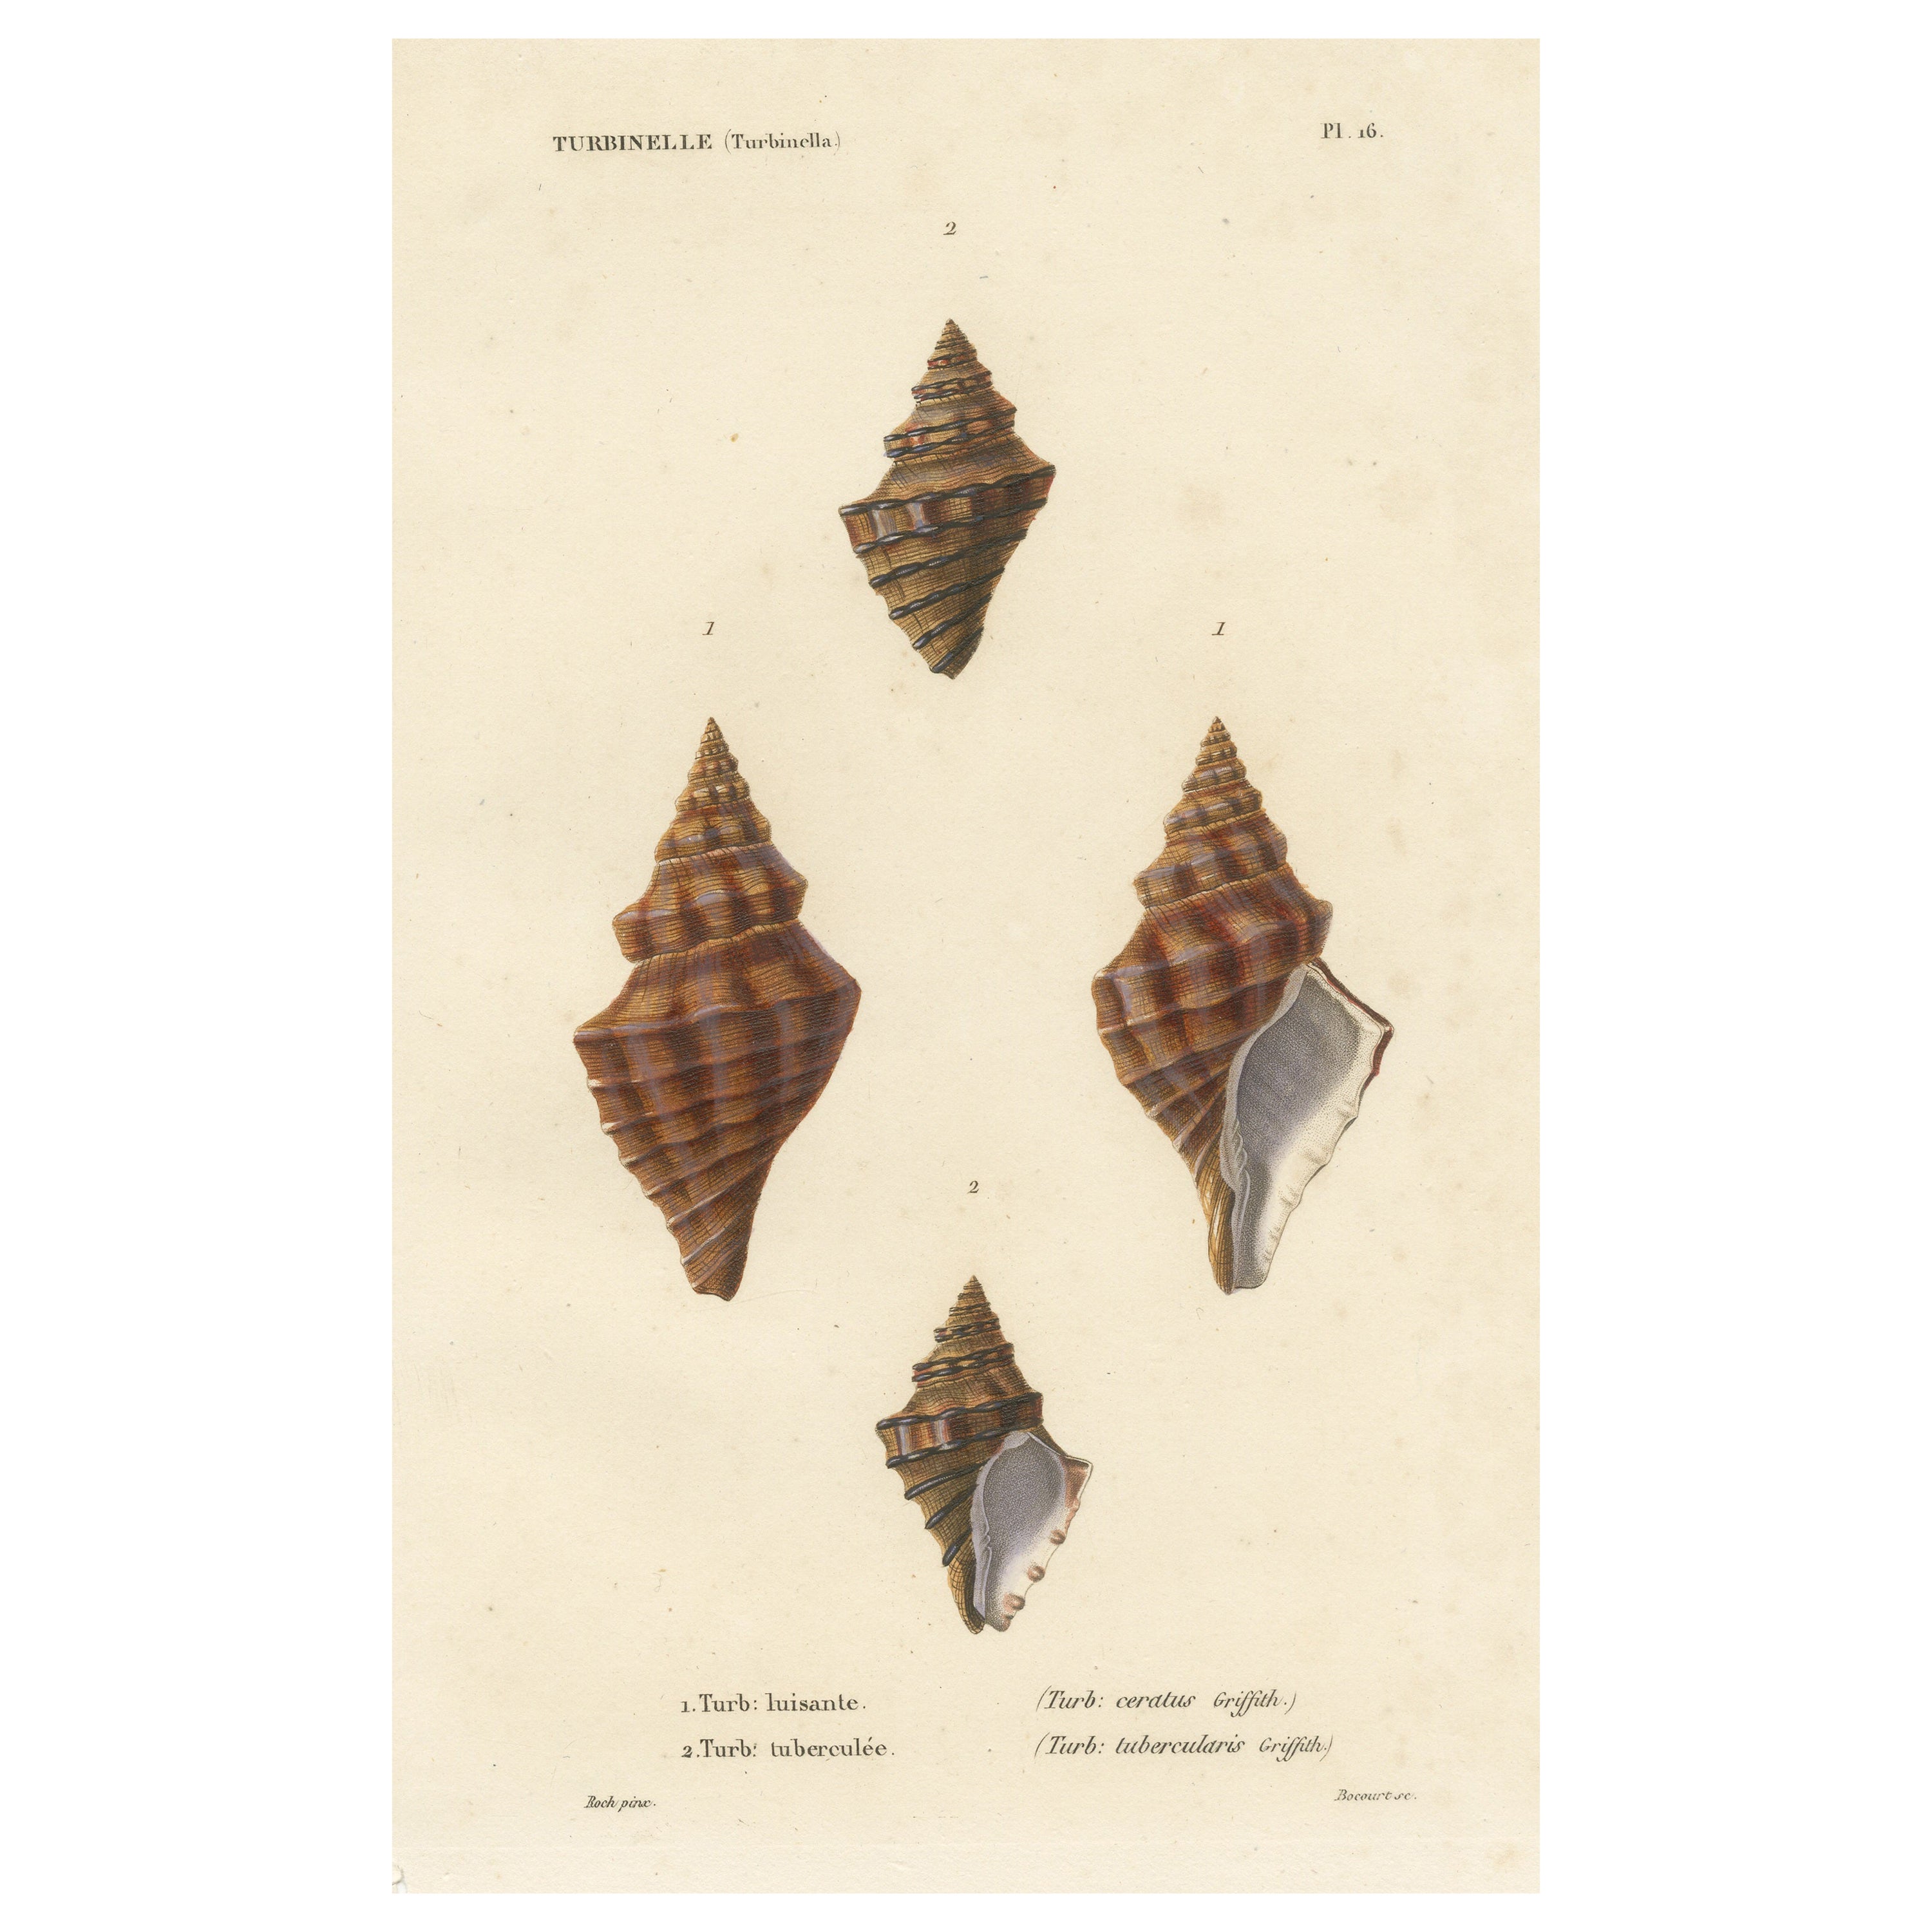 Turbinelle (Turbinella): Antique Sea Shell Print, circa 1840